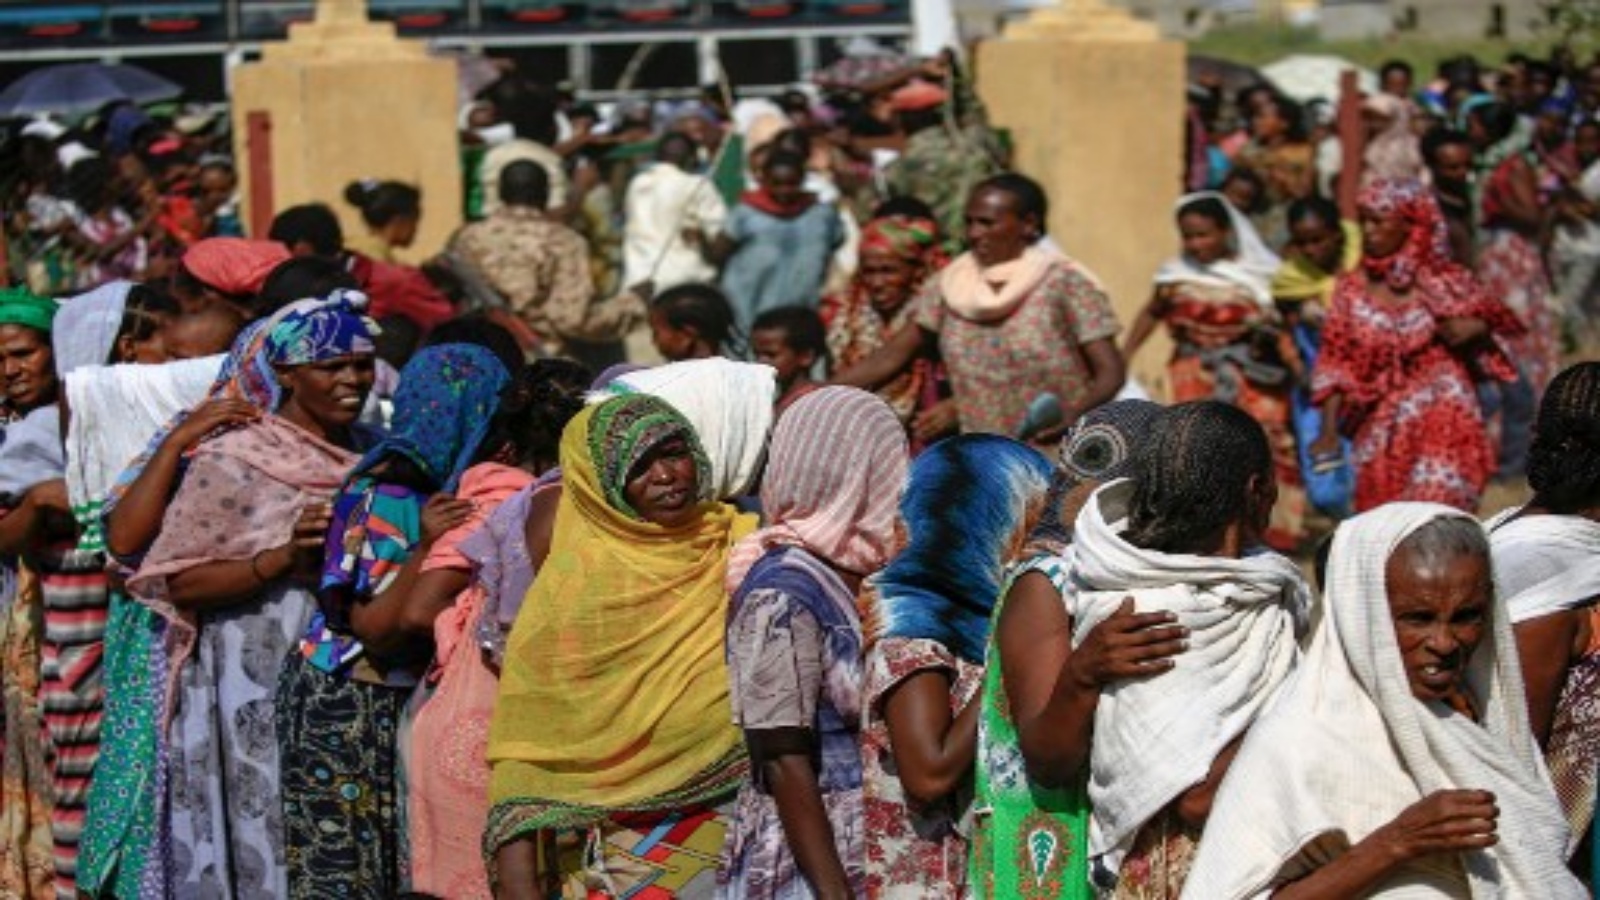 لاجئون اثيوبيون فروا من القتال في منطقة تيغراي يتجمعون في مركز استقبال حدودي (القرية 8) في ولاية القضارف شرق السودان ، في 20 نوفمبر 2020. 